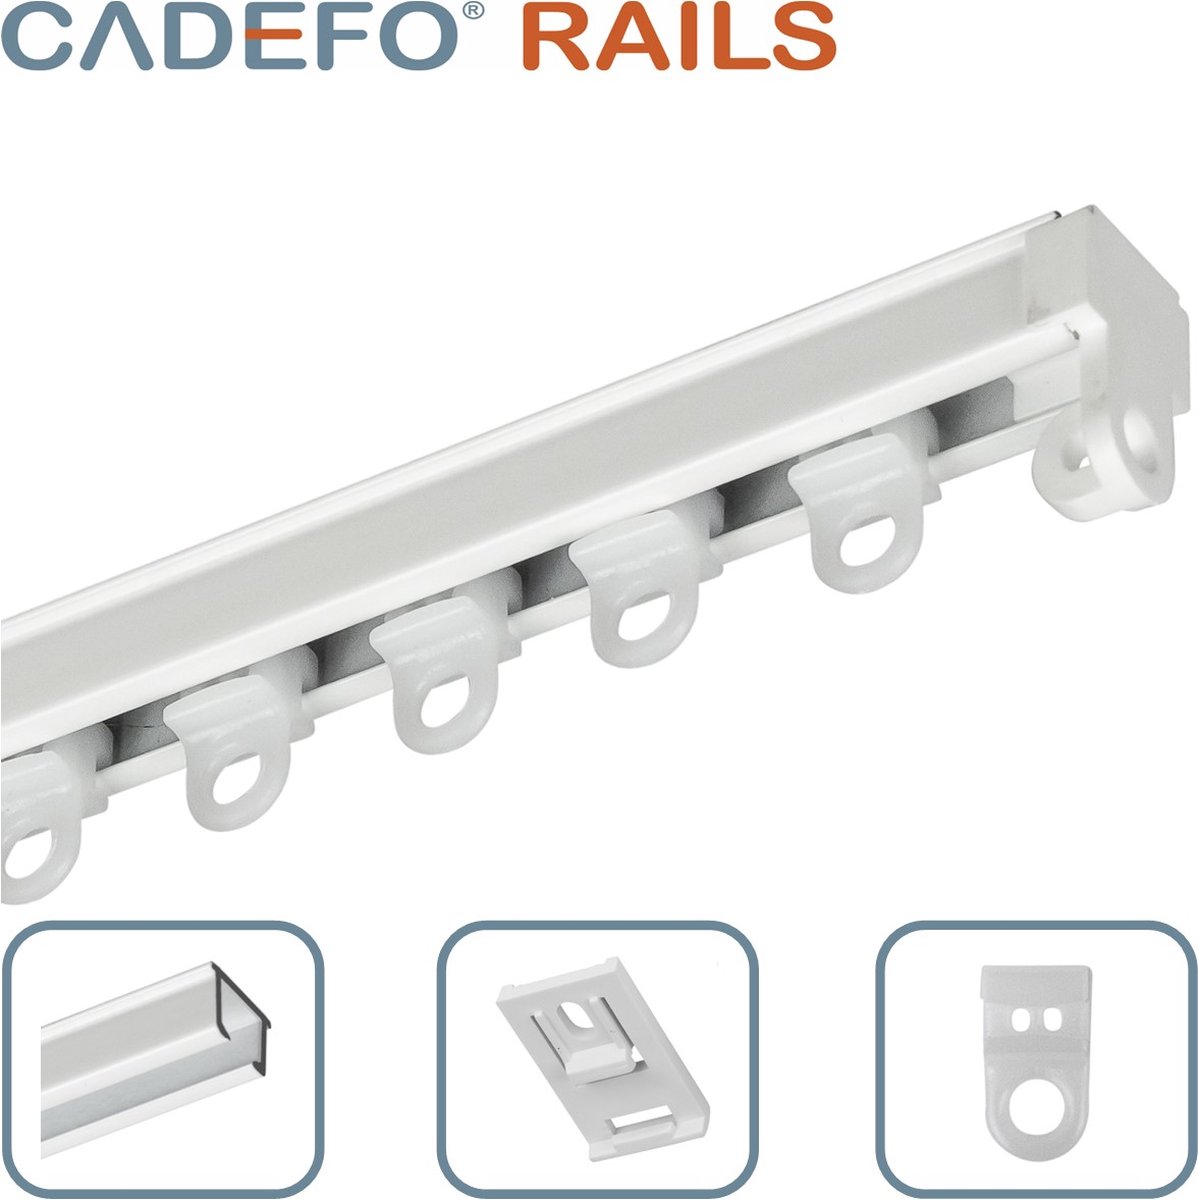 CADEFO RAILS (551 - 600 cm) Gordijnrails - Compleet op maat! - UIT 1 STUK - Leverbaar tot 6 meter - Plafondbevestiging - Lengte 583 cm